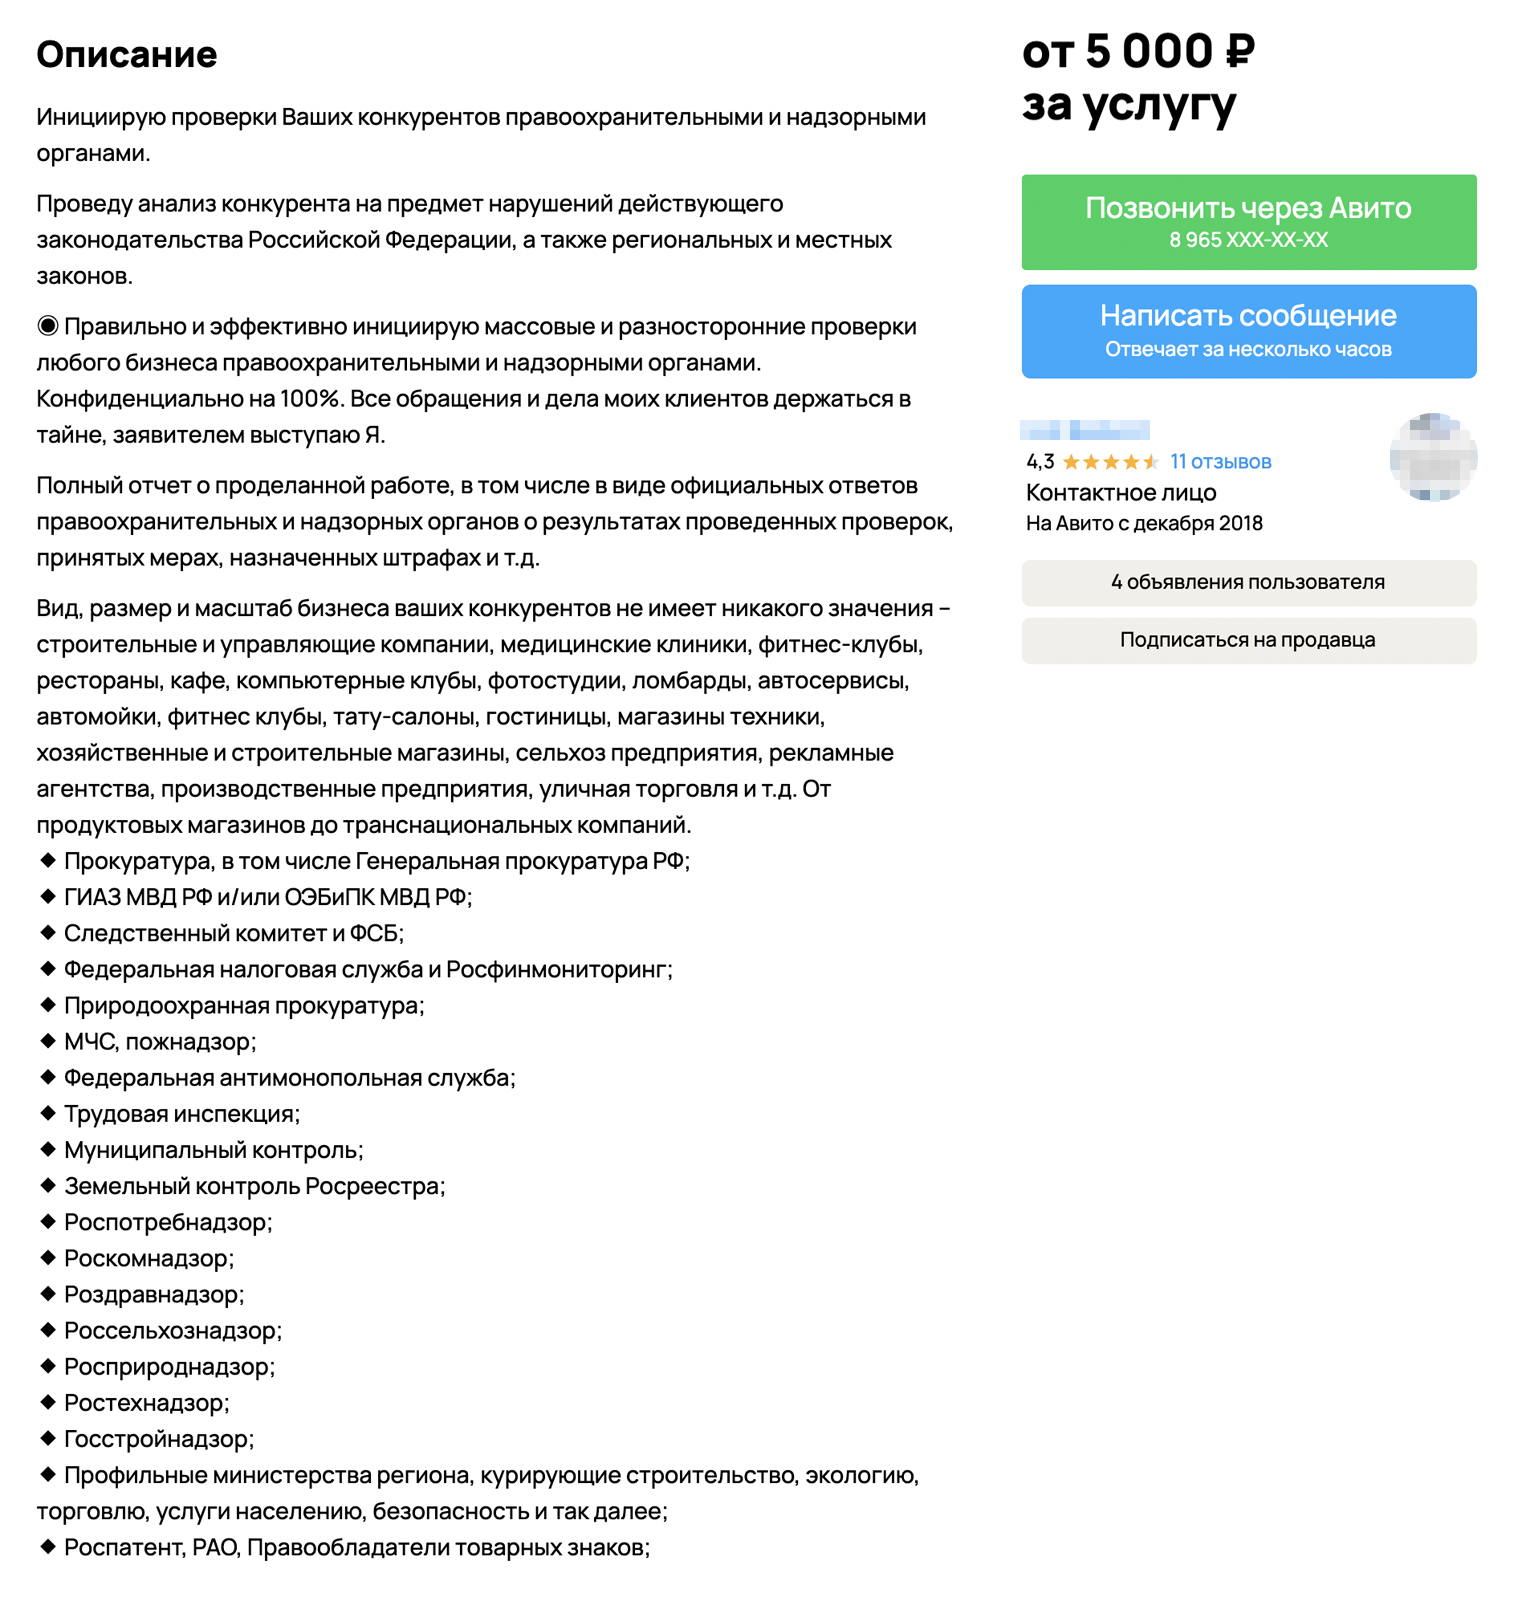 Обещают организовать проверку любым ведомством. Цены — от 5000 ₽. Источник: avito.ru